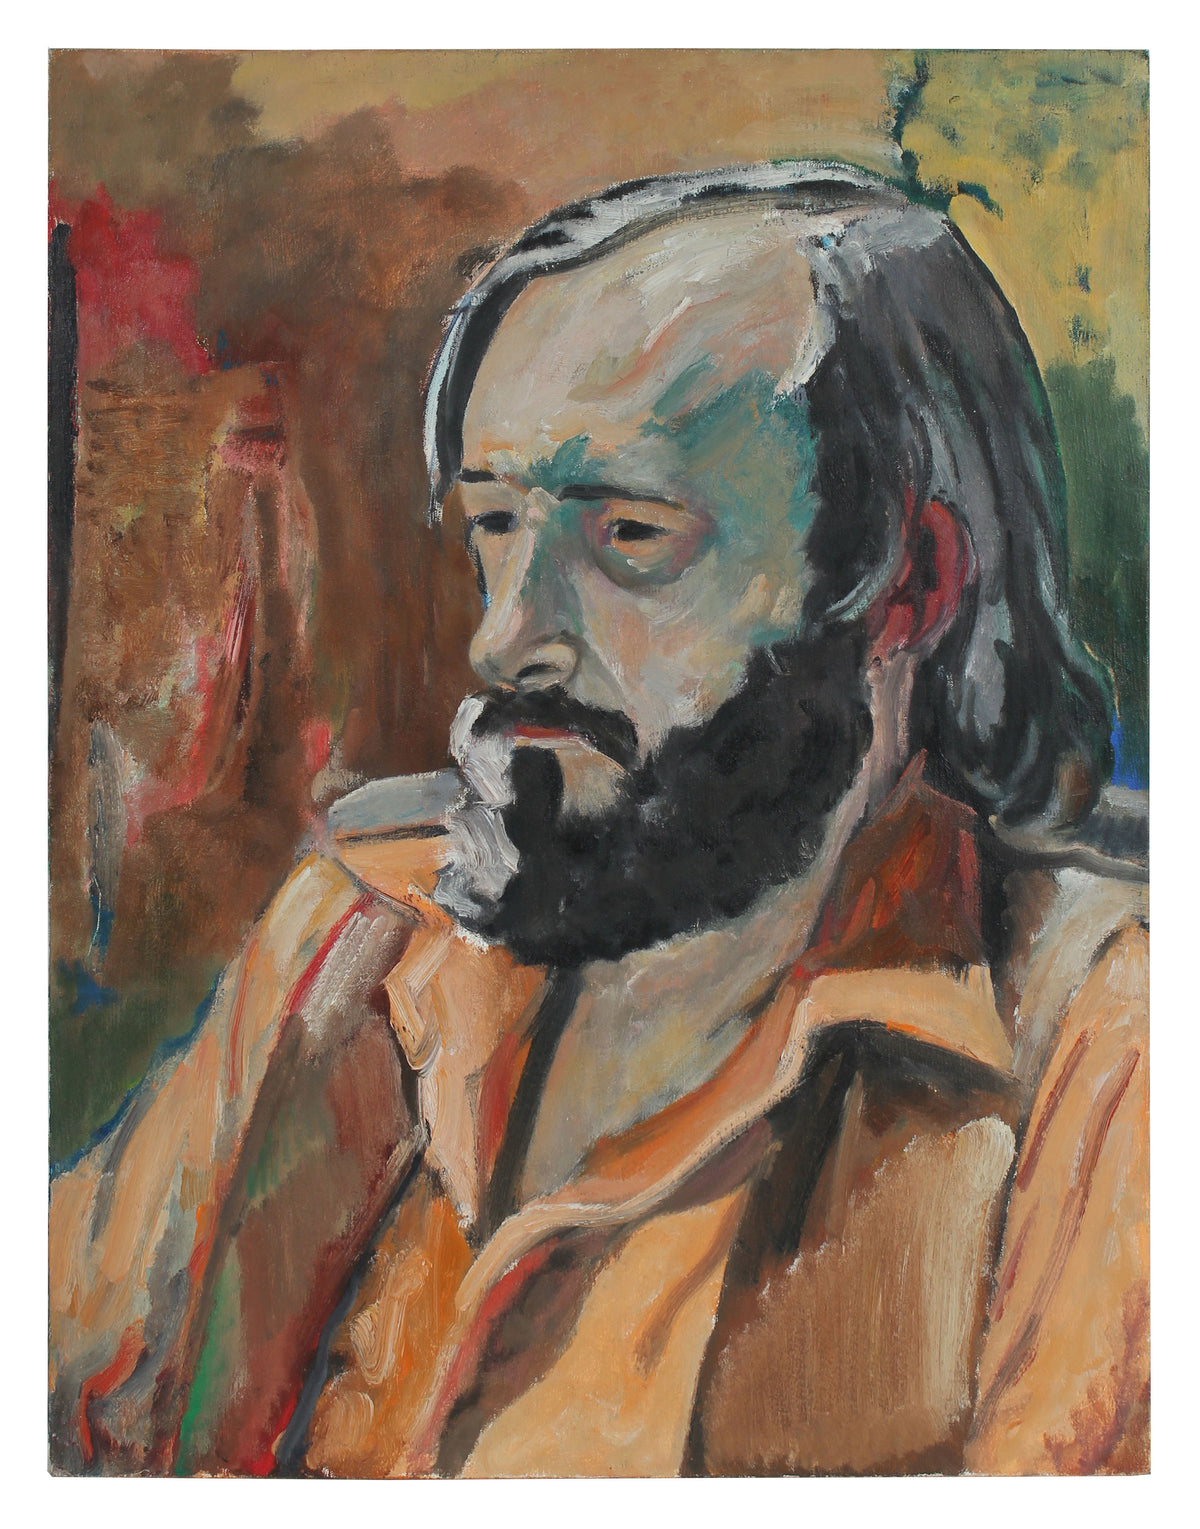 &lt;i&gt;A.M.Tuggle&lt;/i&gt; &lt;br&gt;1972 Oil Portrait &lt;br&gt;&lt;br&gt;#96802